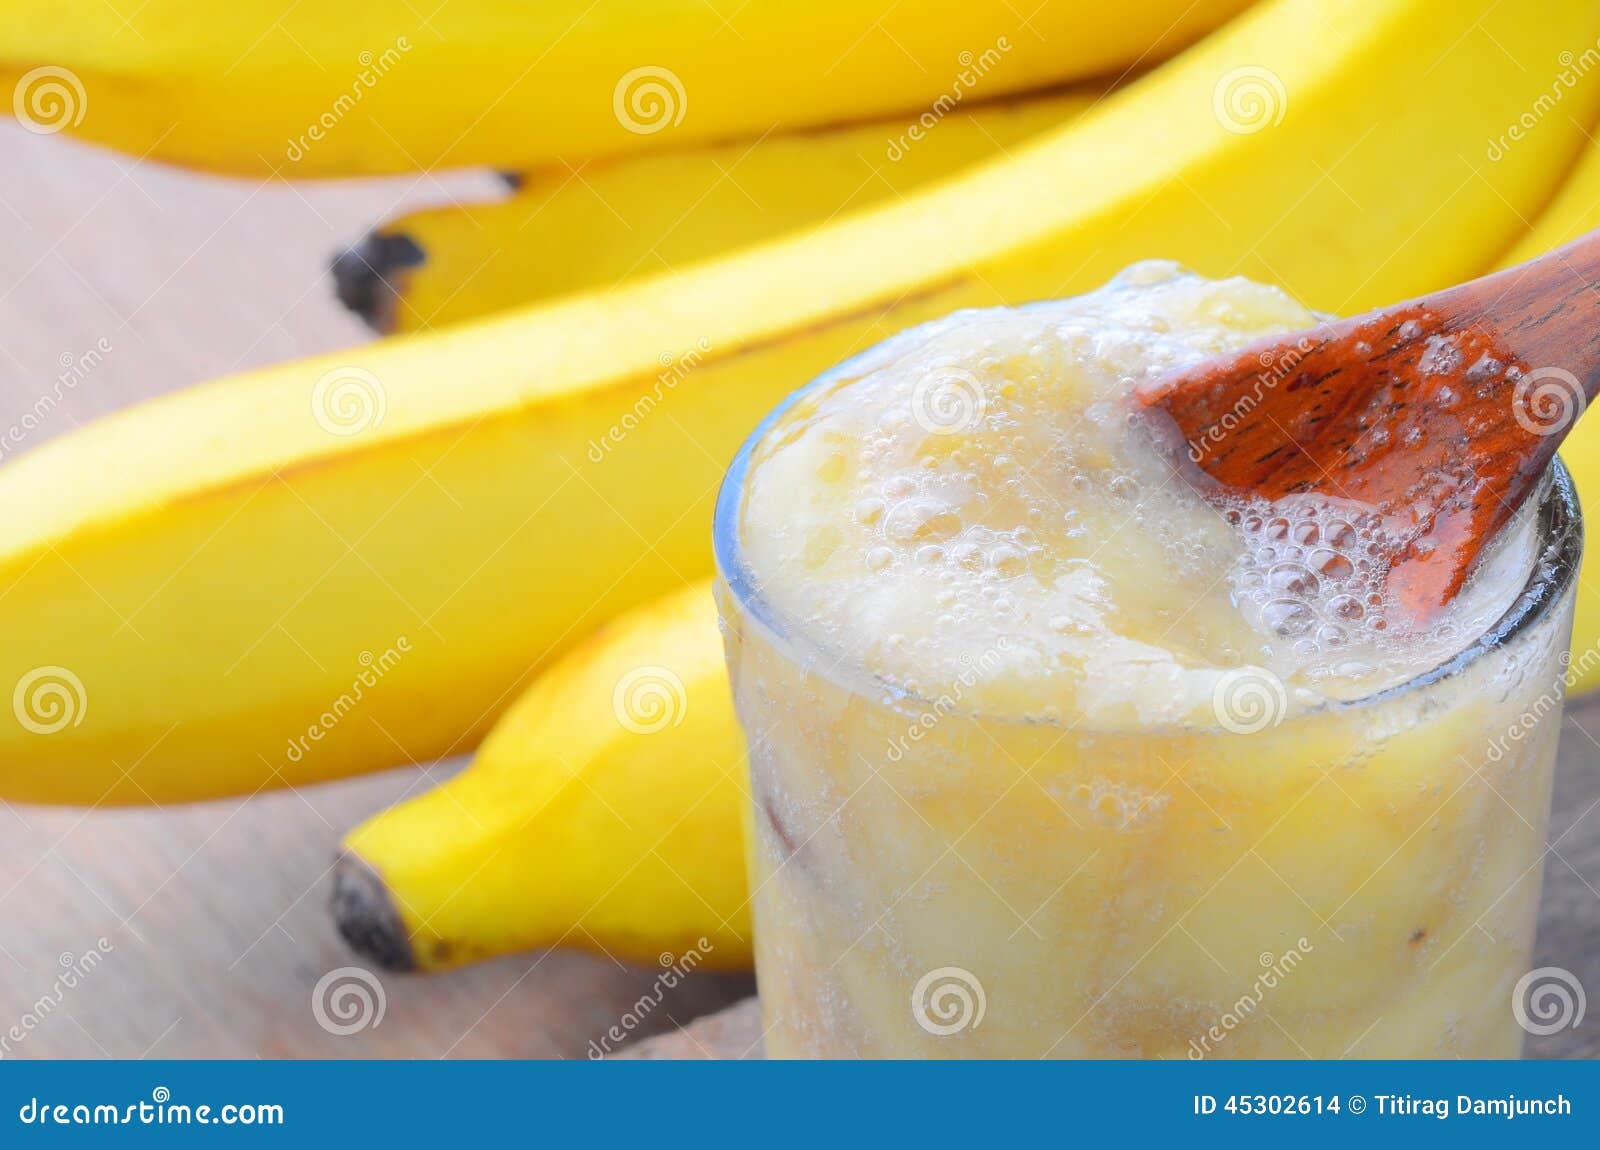 Как сделать банановое пюре. Банановое пюре. Протертый банан. Пюре банан в стаканчике. Банановое пюре в чашке.